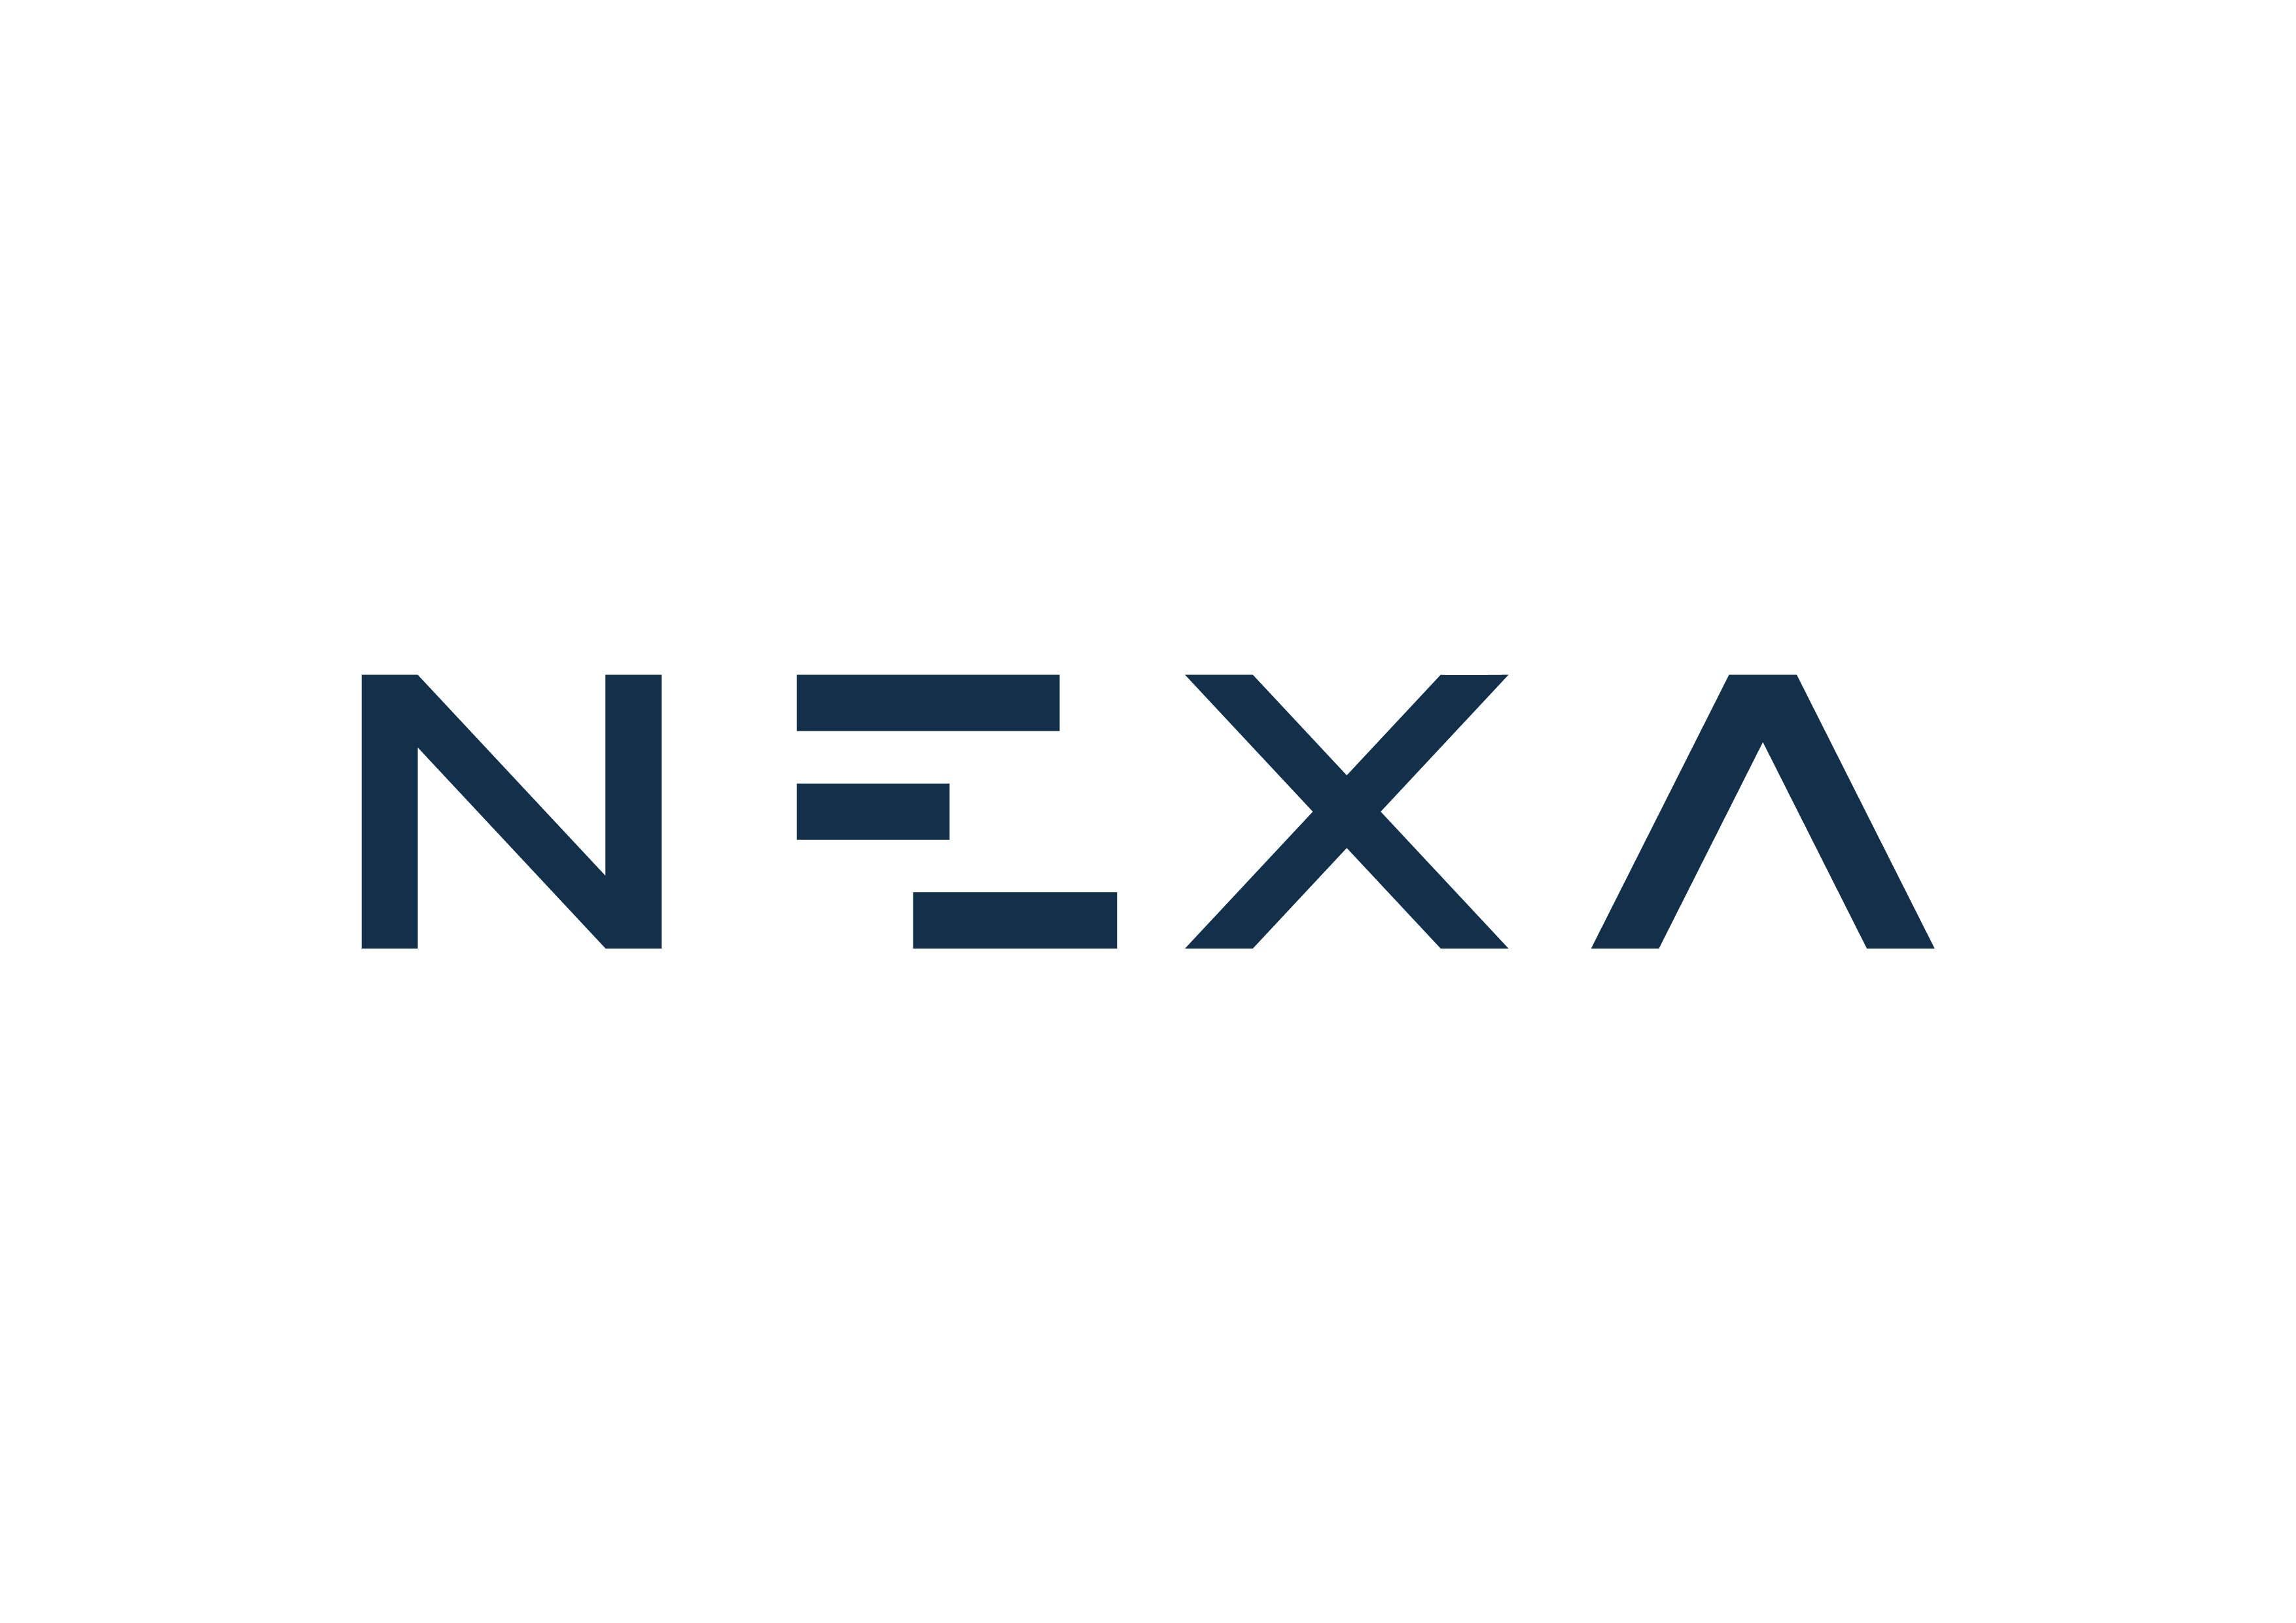 کارشناس سیستم ها و روش ها | Systems and Methods Expert - نکسا گروپ (مدیریت سرمایه نیکسا هزاره سوم) | Nexa Group